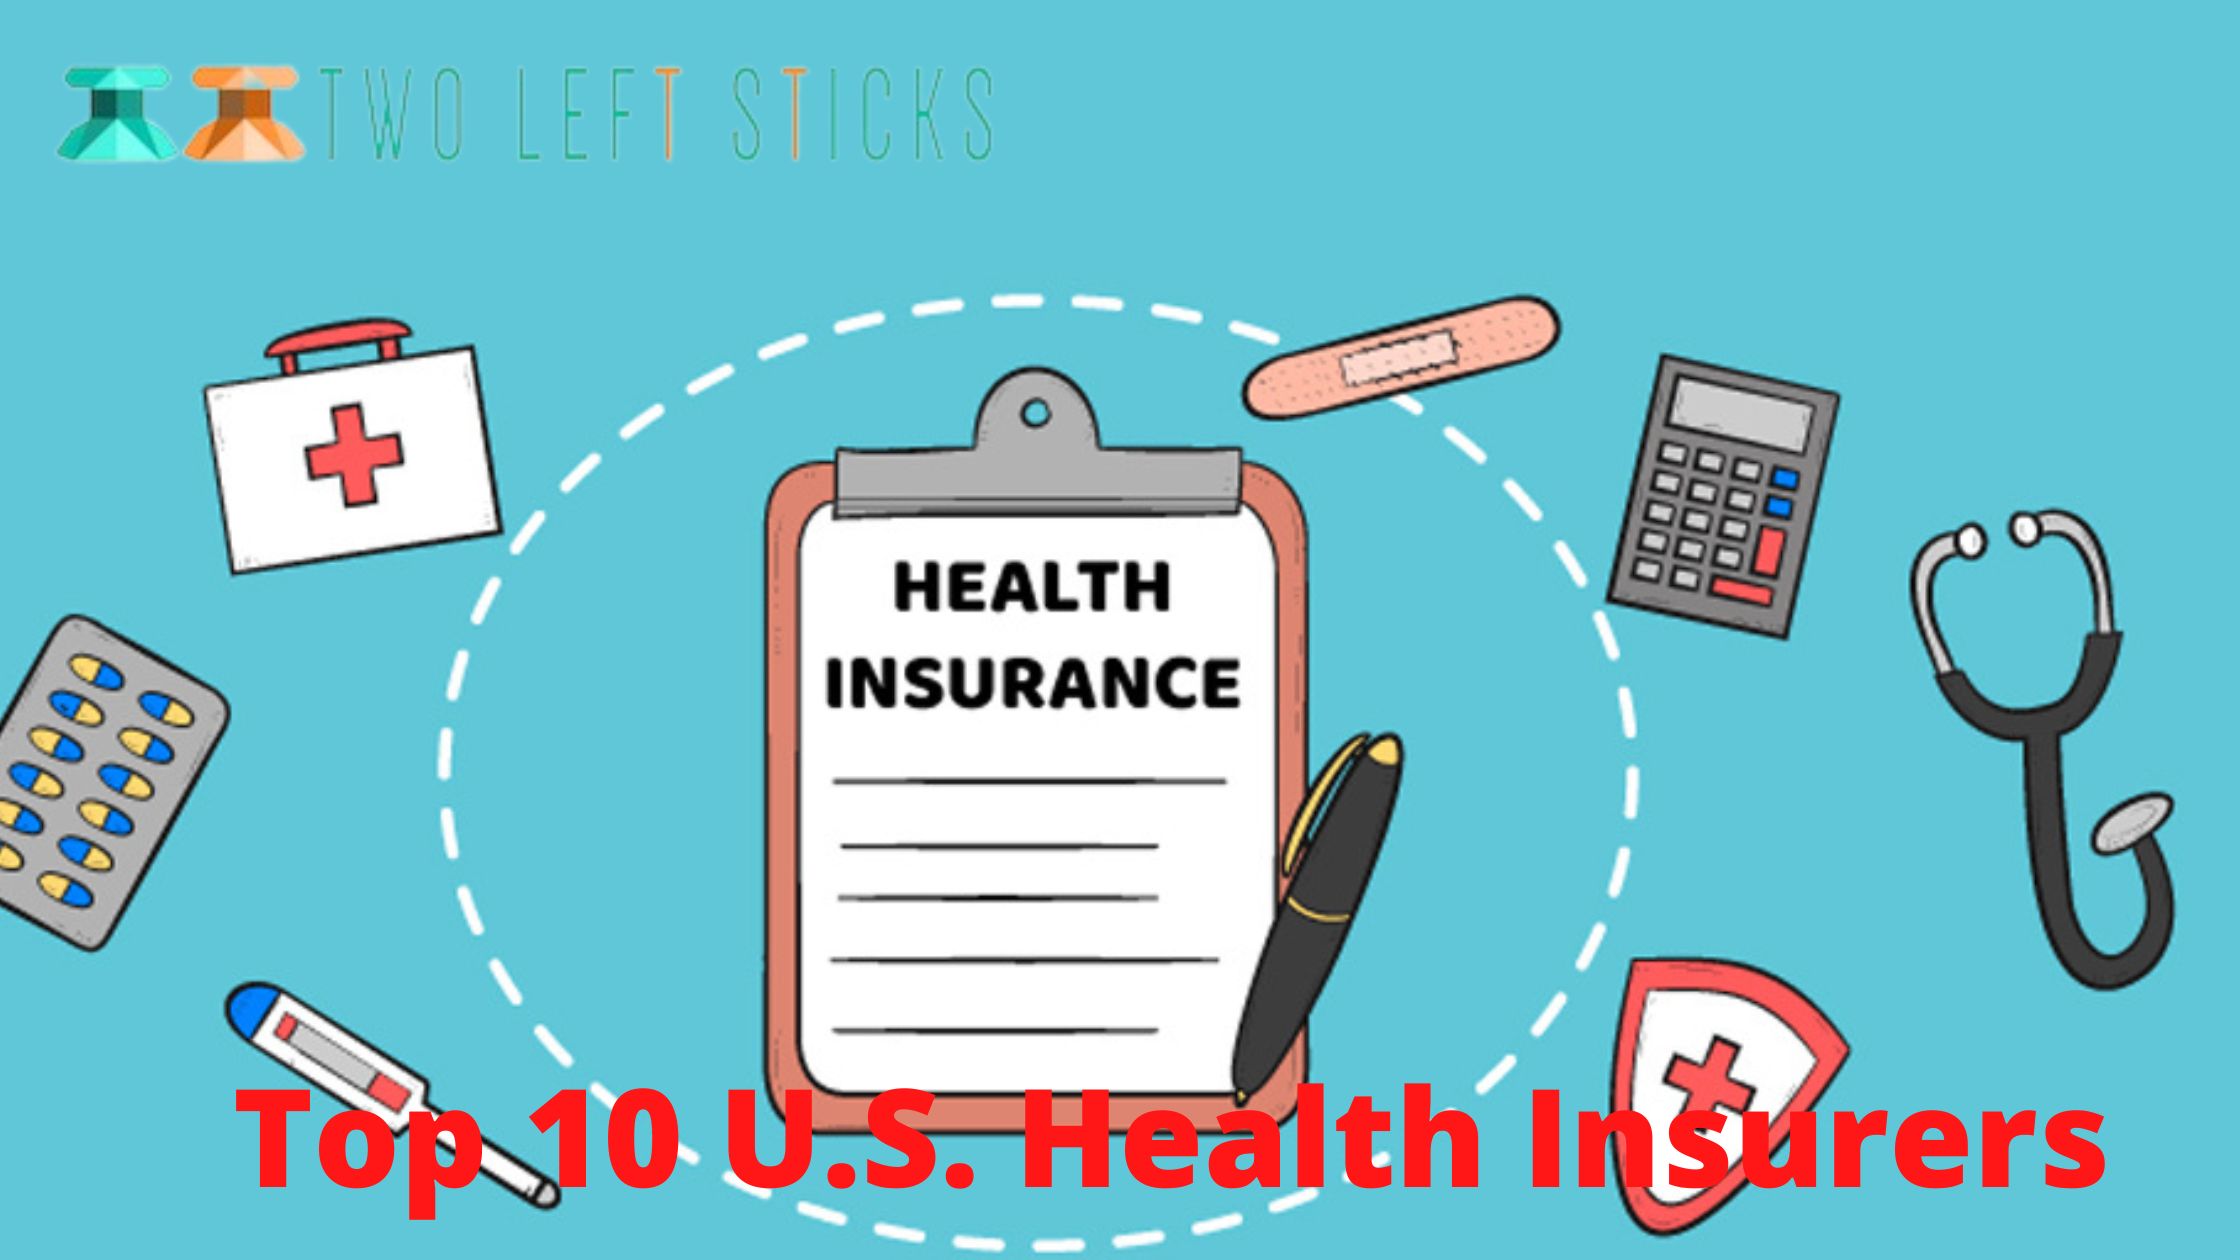 top-10-US-Health-Insurers-twoleftsticks(1)